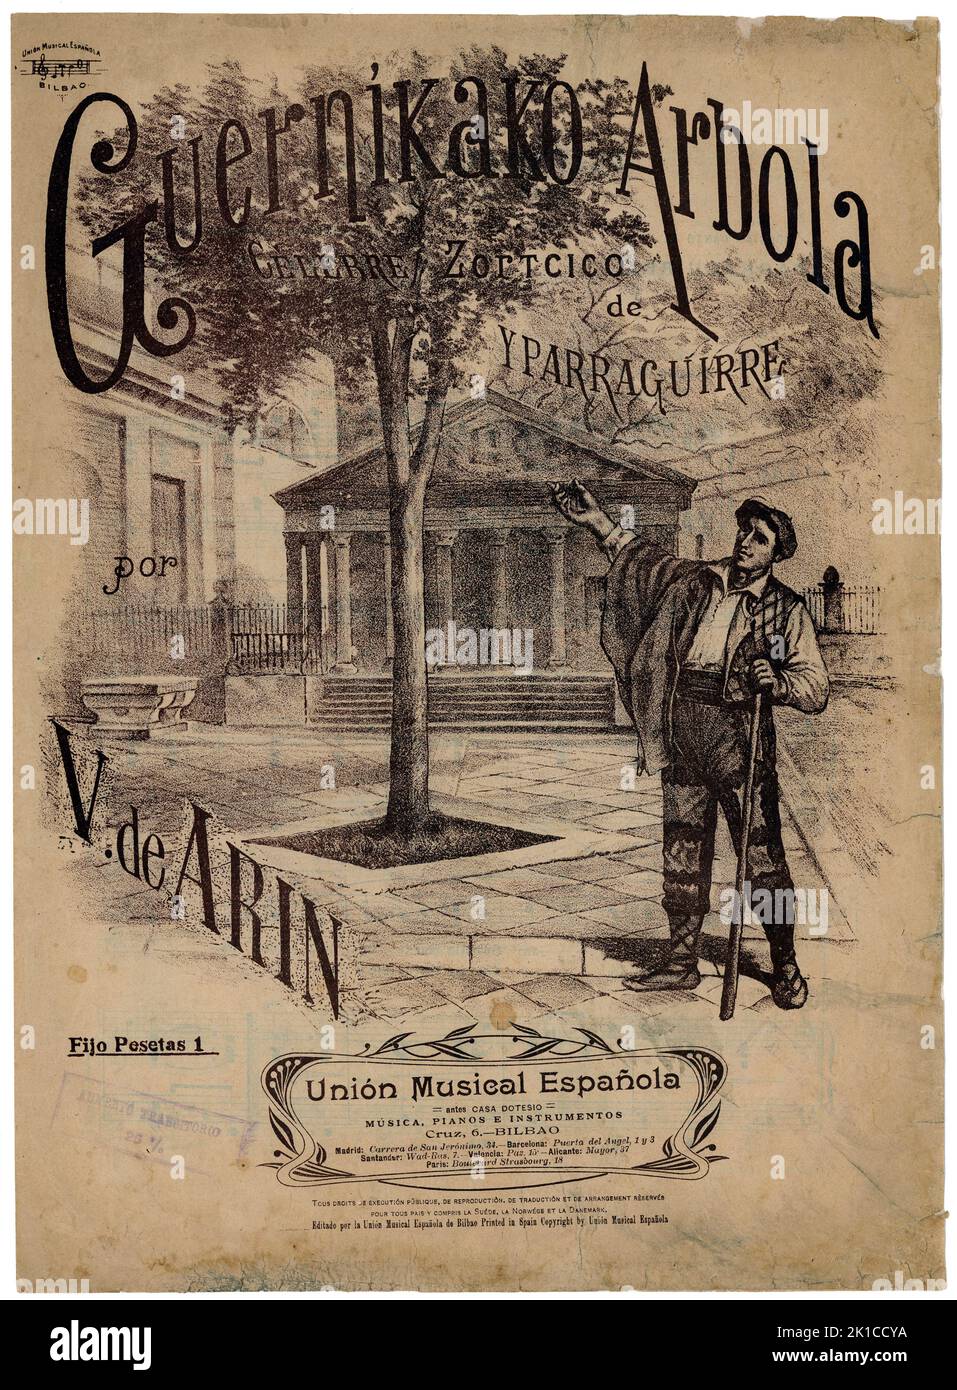 Partitura musical del himno vasco Guernikako Arbola, de Yparraguirre. Años 1900. Stock Photo